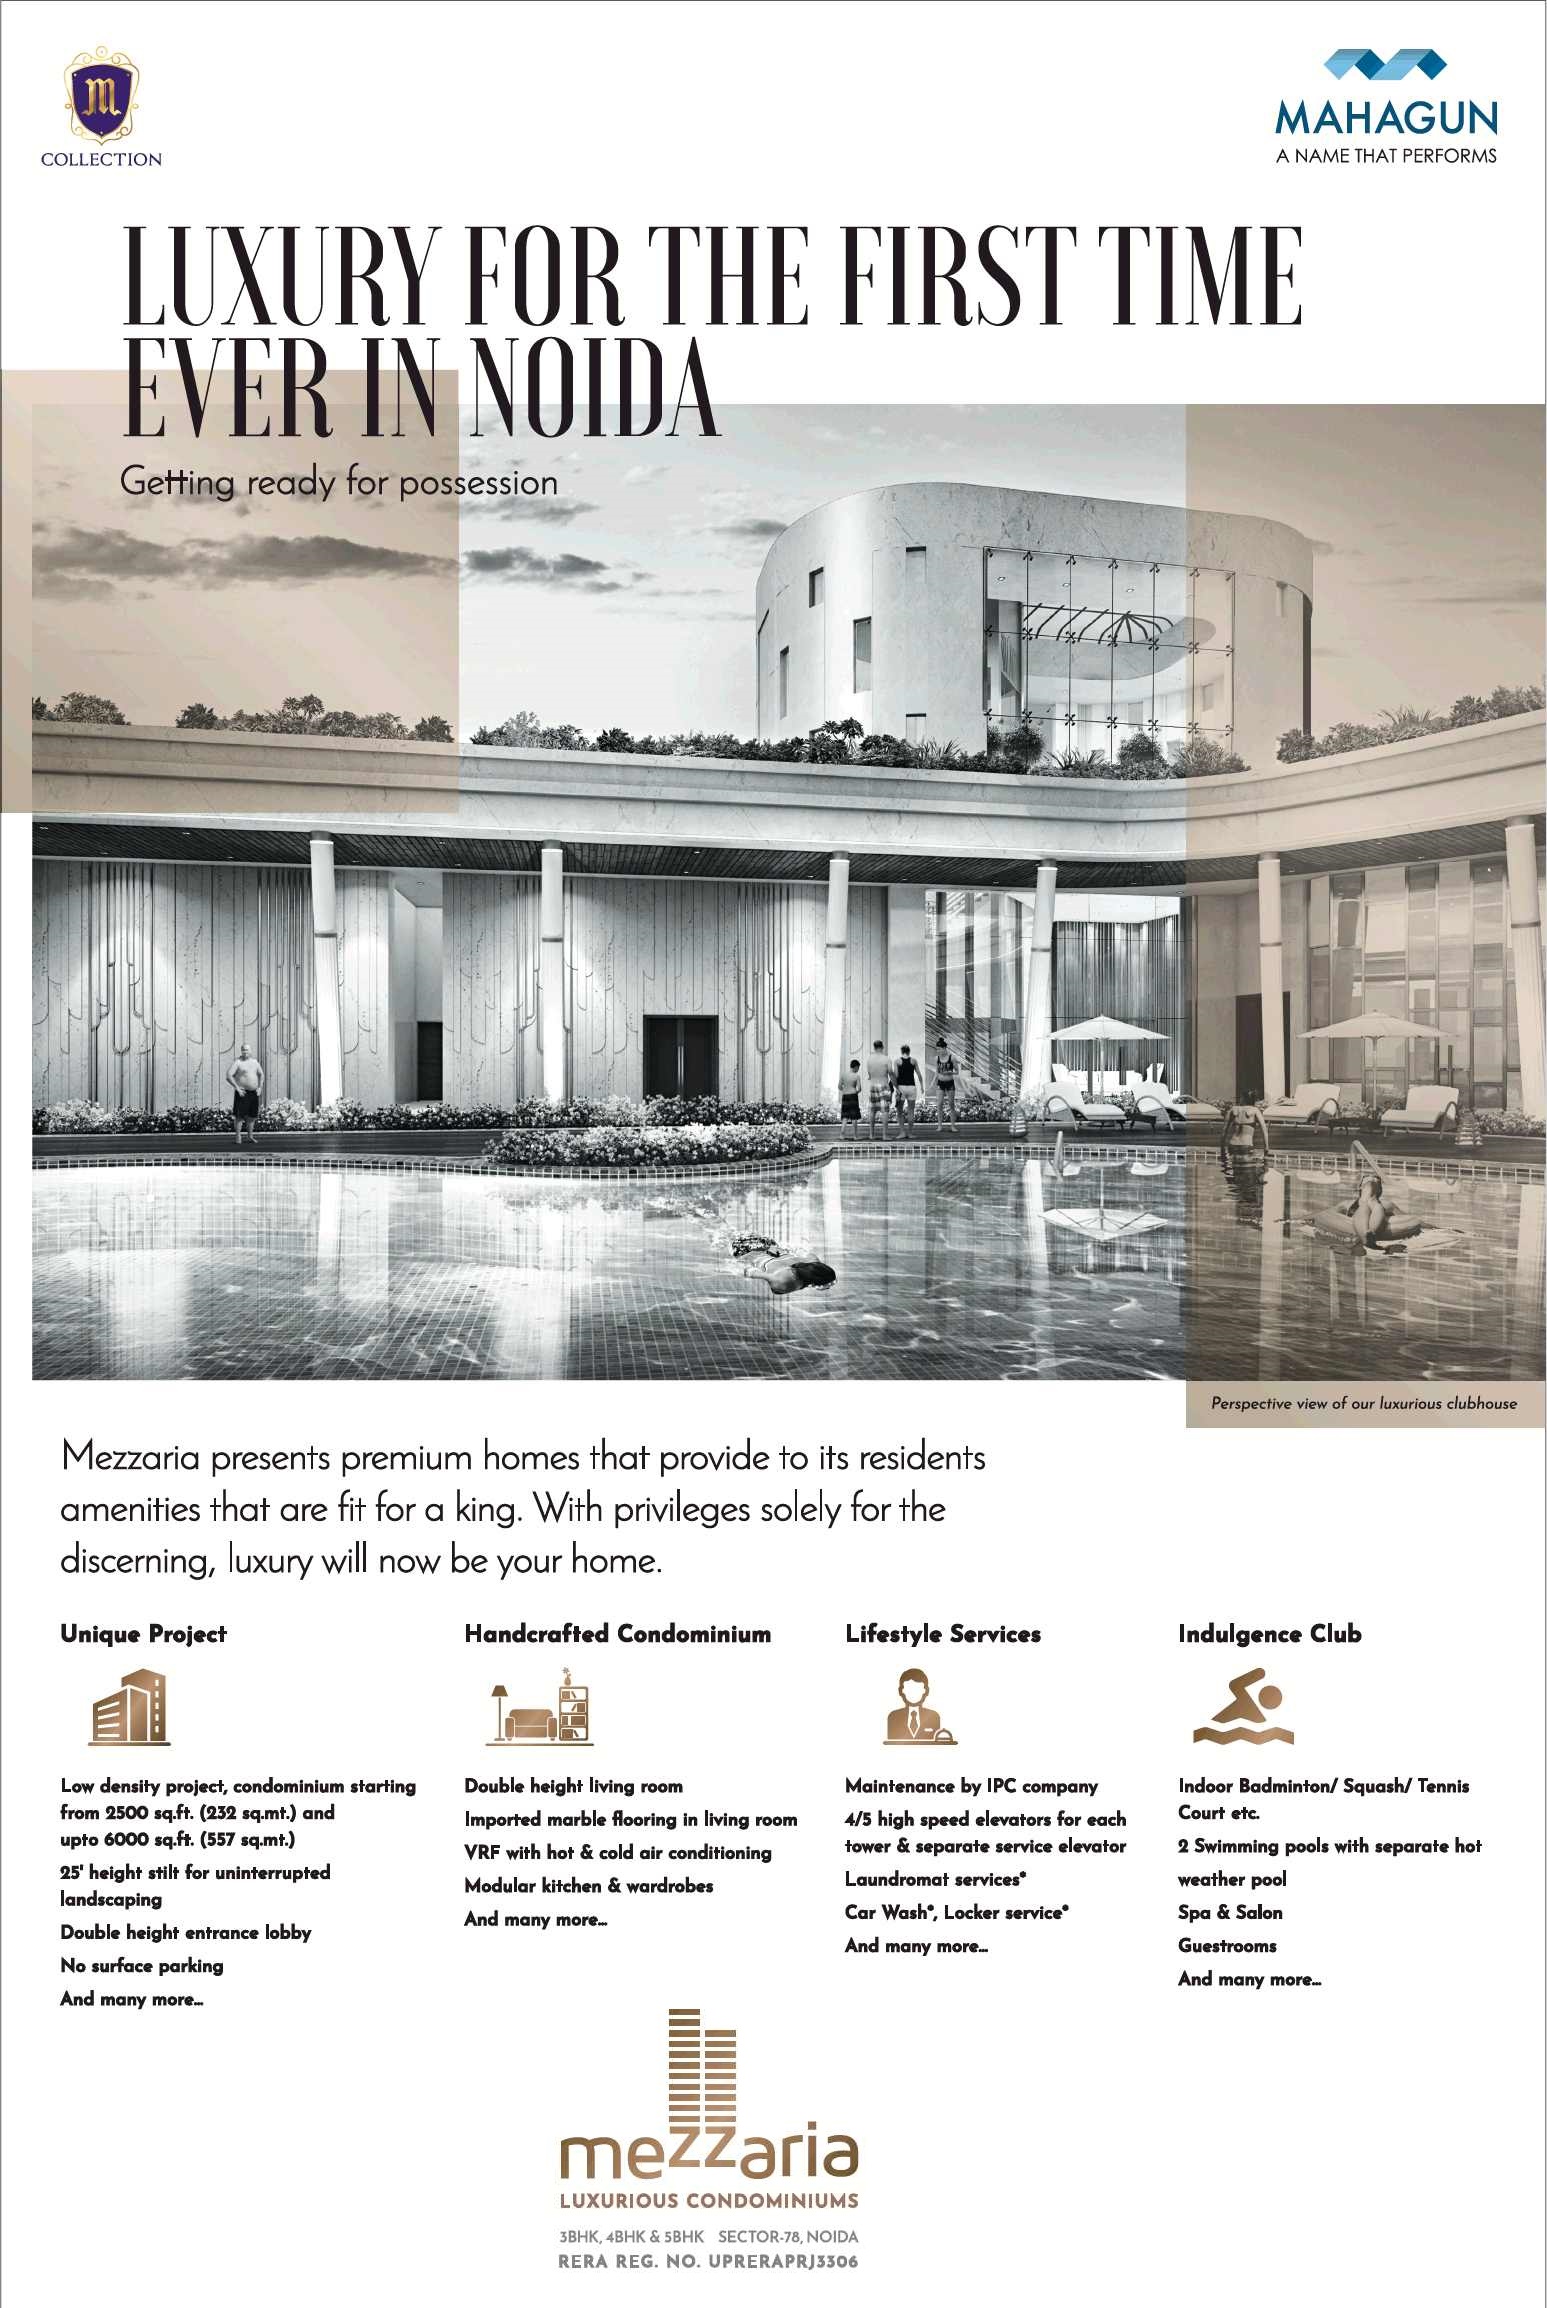 Presenting premium luxury homes at Mahagun Mezzaria in Noida Update